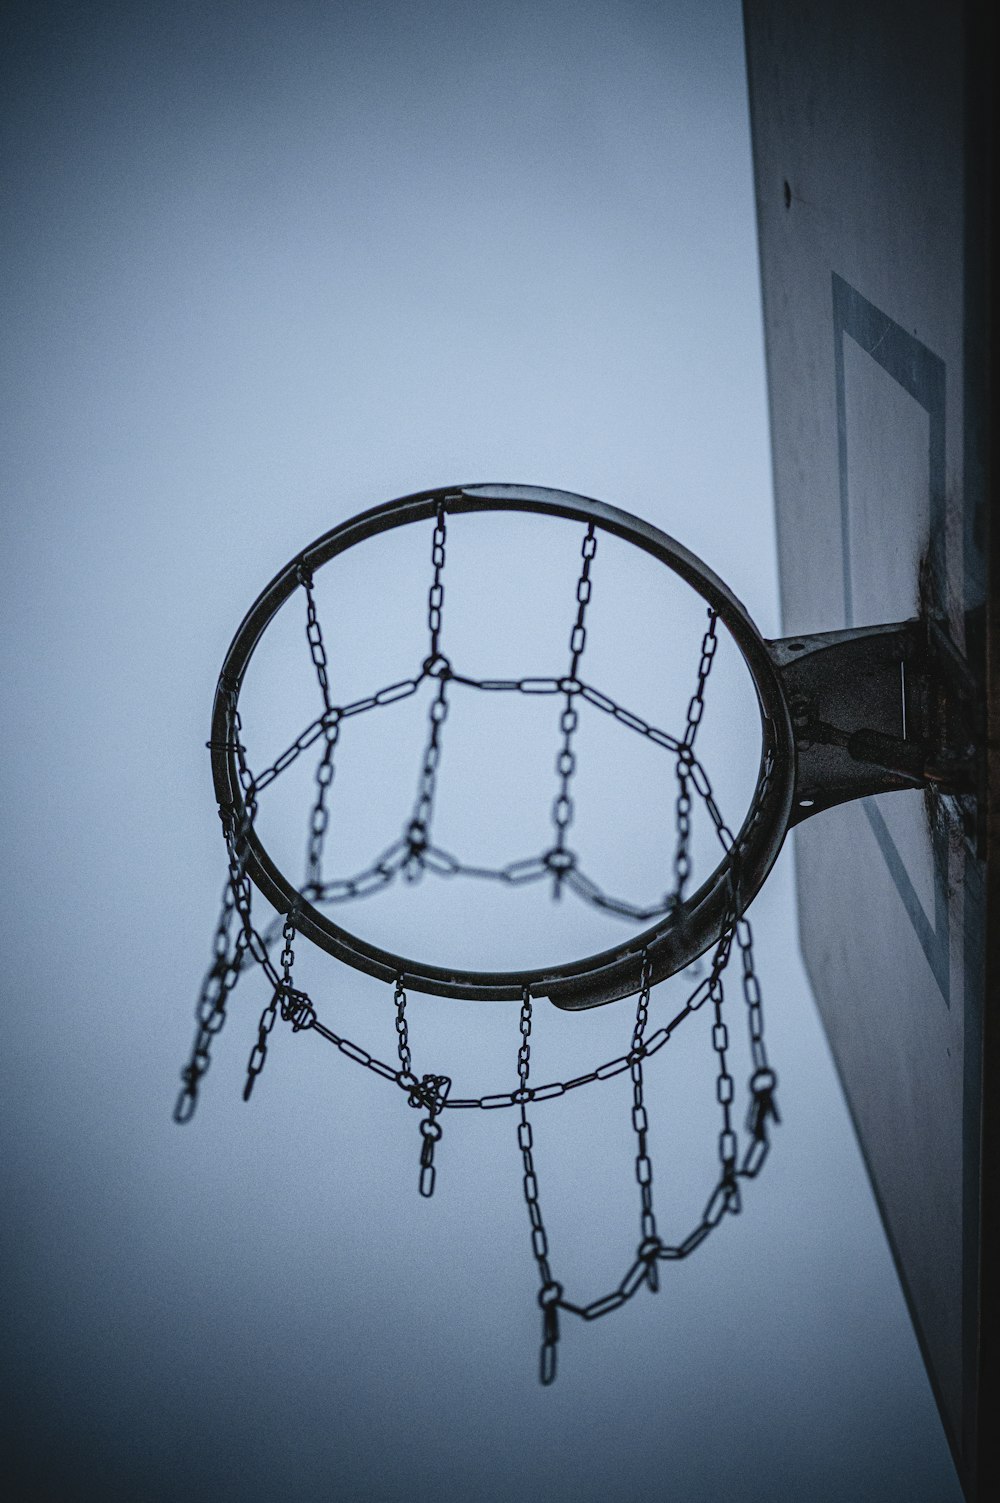 black basketball hoop under blue sky during daytime